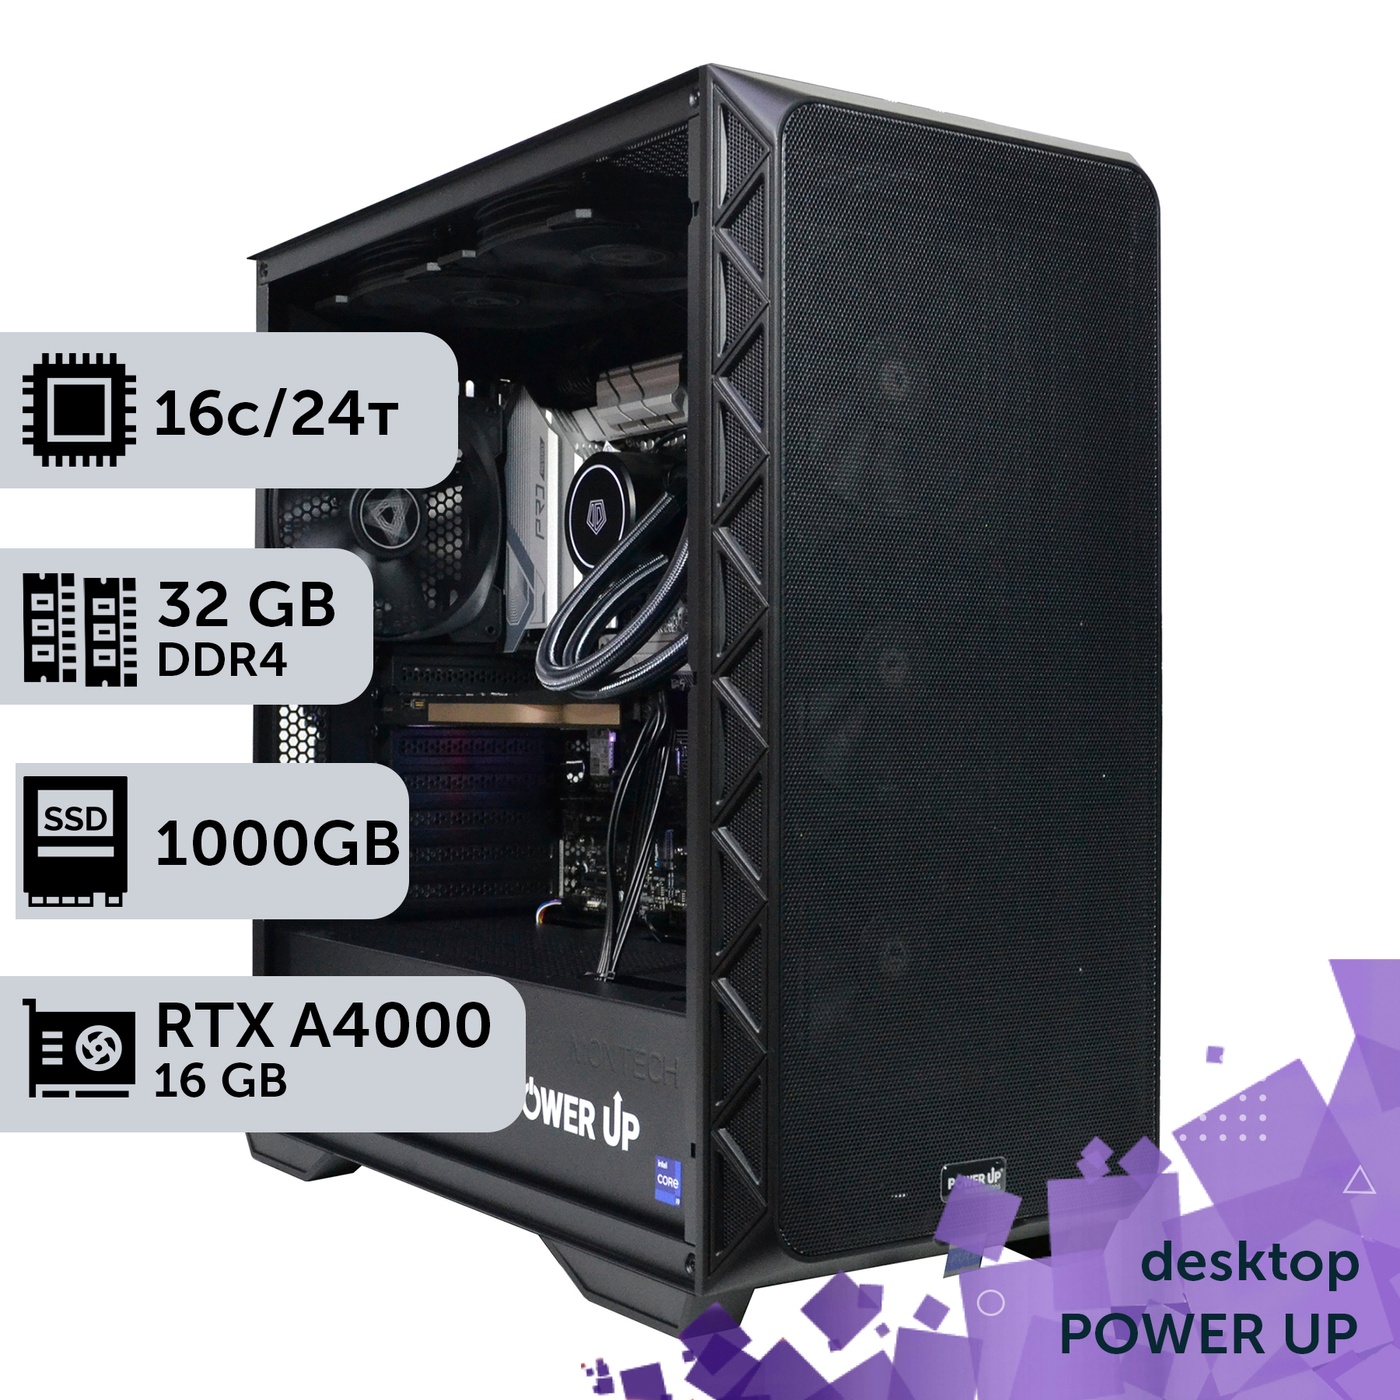 Рабочая станция PowerUp Desktop #239 Core i7 13700K/32 GB/SSD 1TB/NVIDIA Quadro RTX A4000 16GB